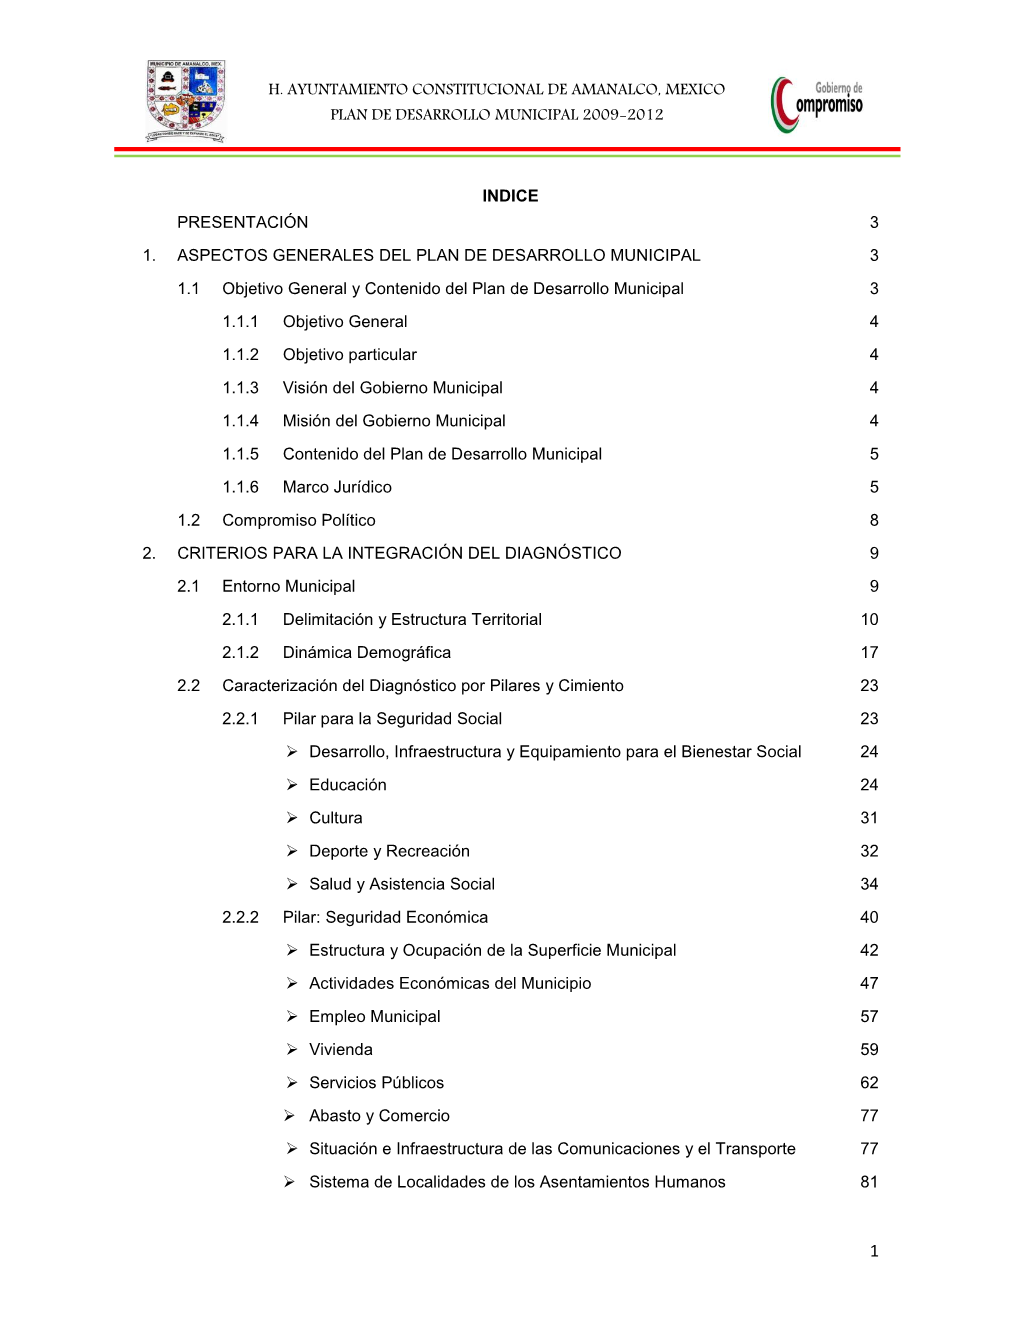 H. Ayuntamiento Constitucional De Amanalco, Mexico Plan De Desarrollo Municipal 2009-2012 Indice Presentación 3 1. Aspectos